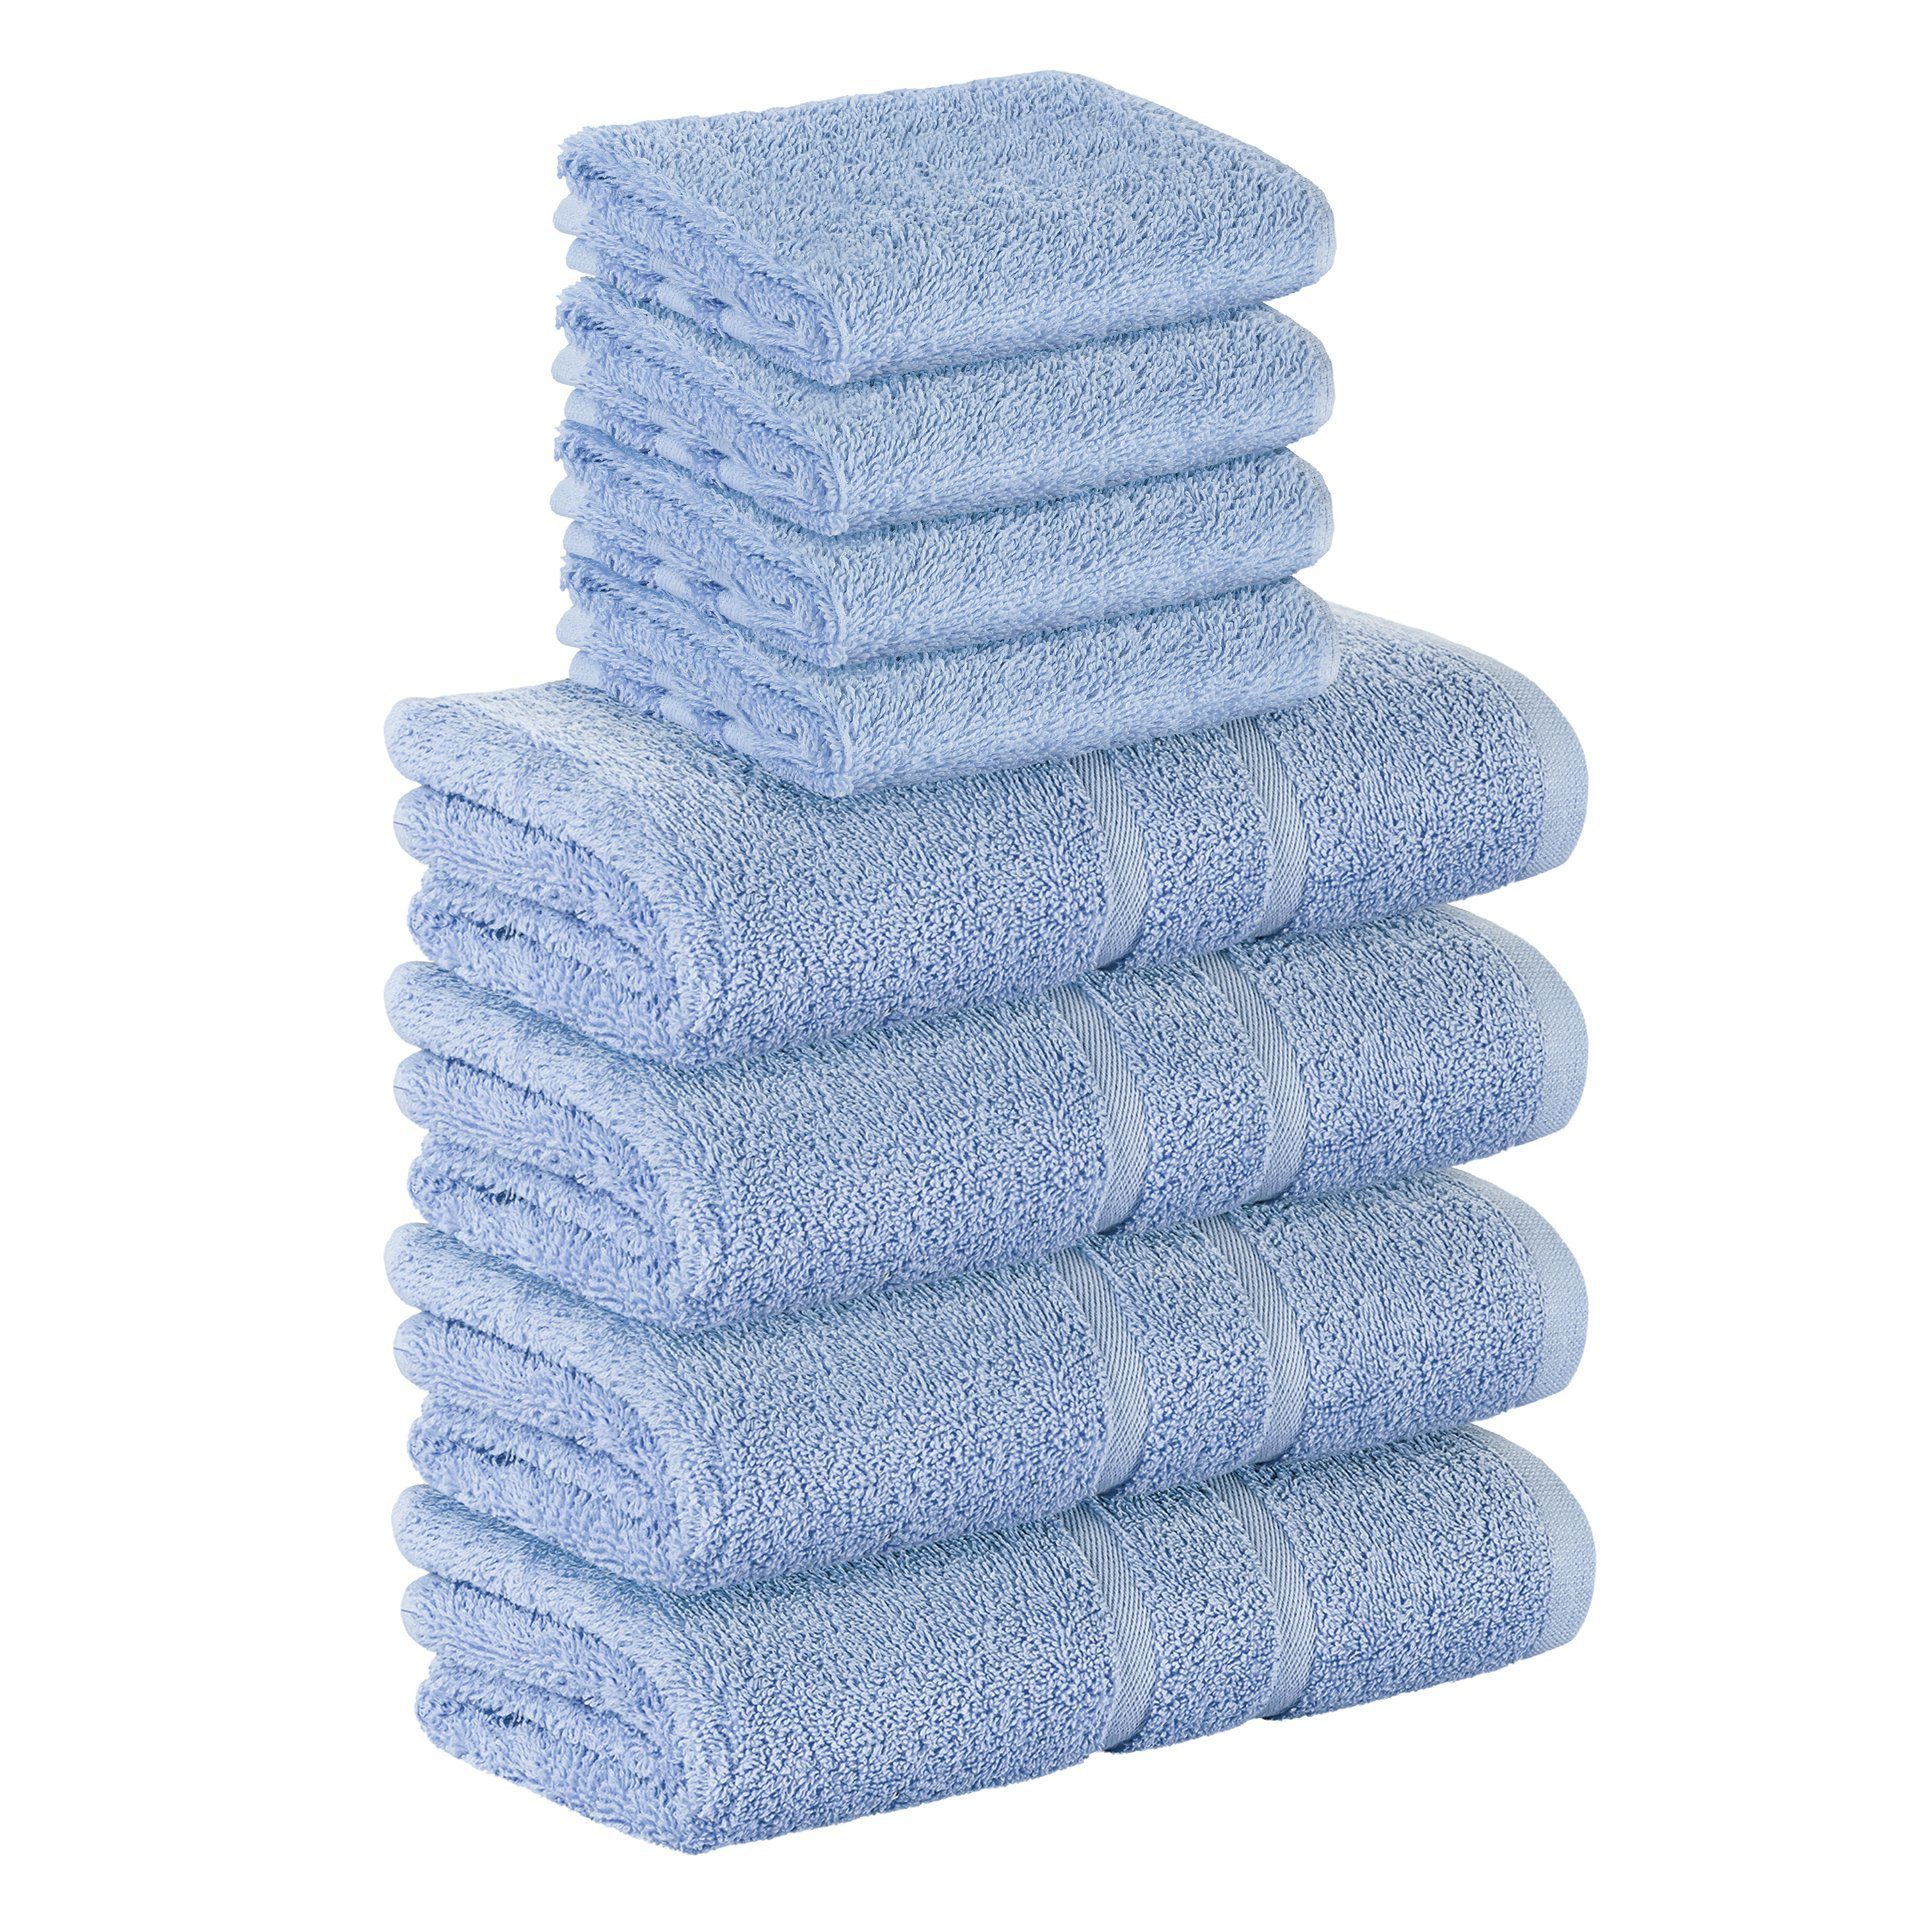 StickandShine Handtuch Set 4x Gästehandtuch 4x Handtücher als SET in verschiedenen Farben (8 Teilig) 100% Baumwolle 500 GSM Frottee 8er Handtuch Pack, 100% Baumwolle 500 GSM Hellblau